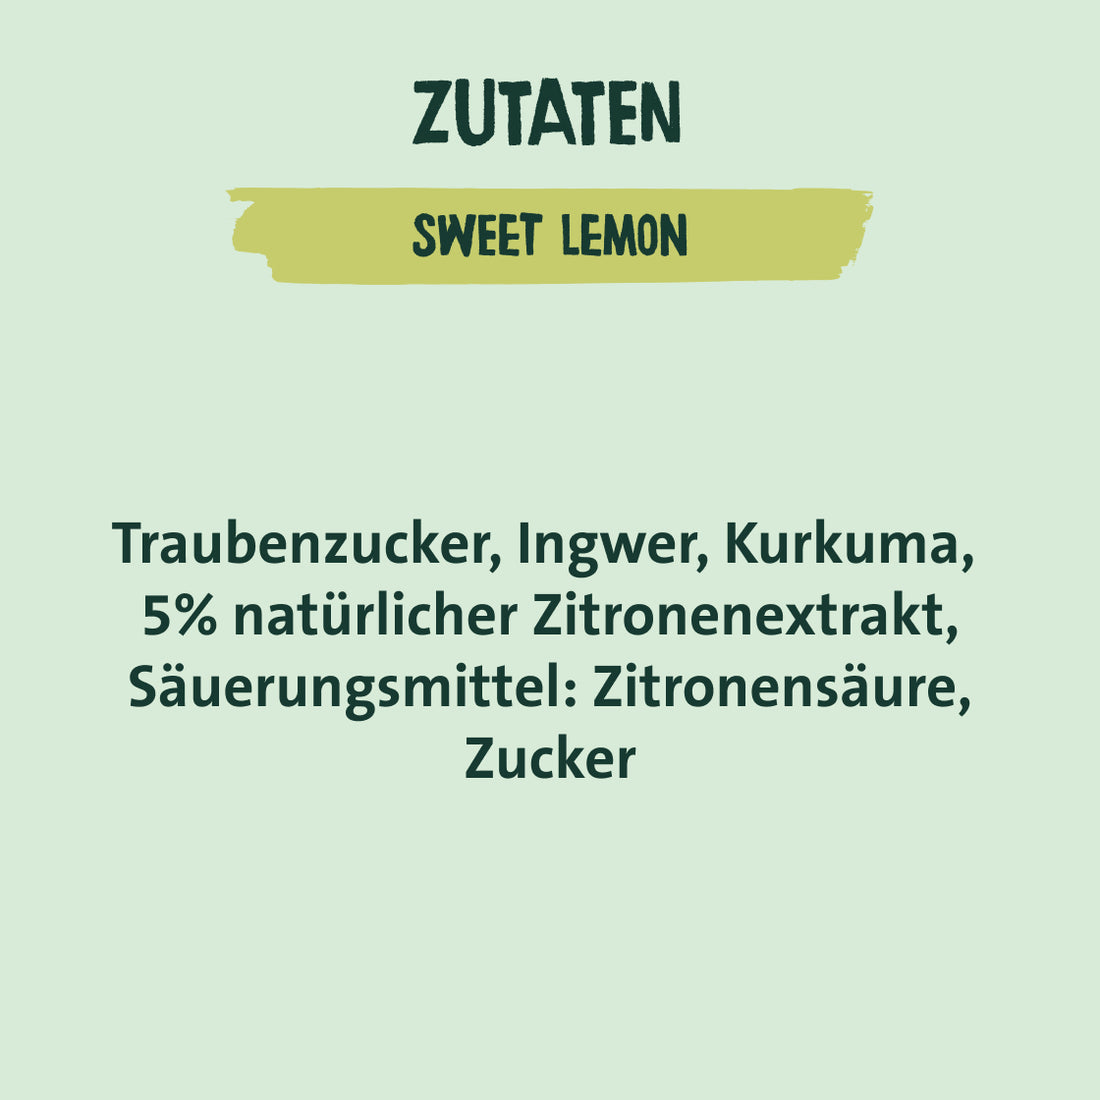 Sweet Lemon - for baking and refining